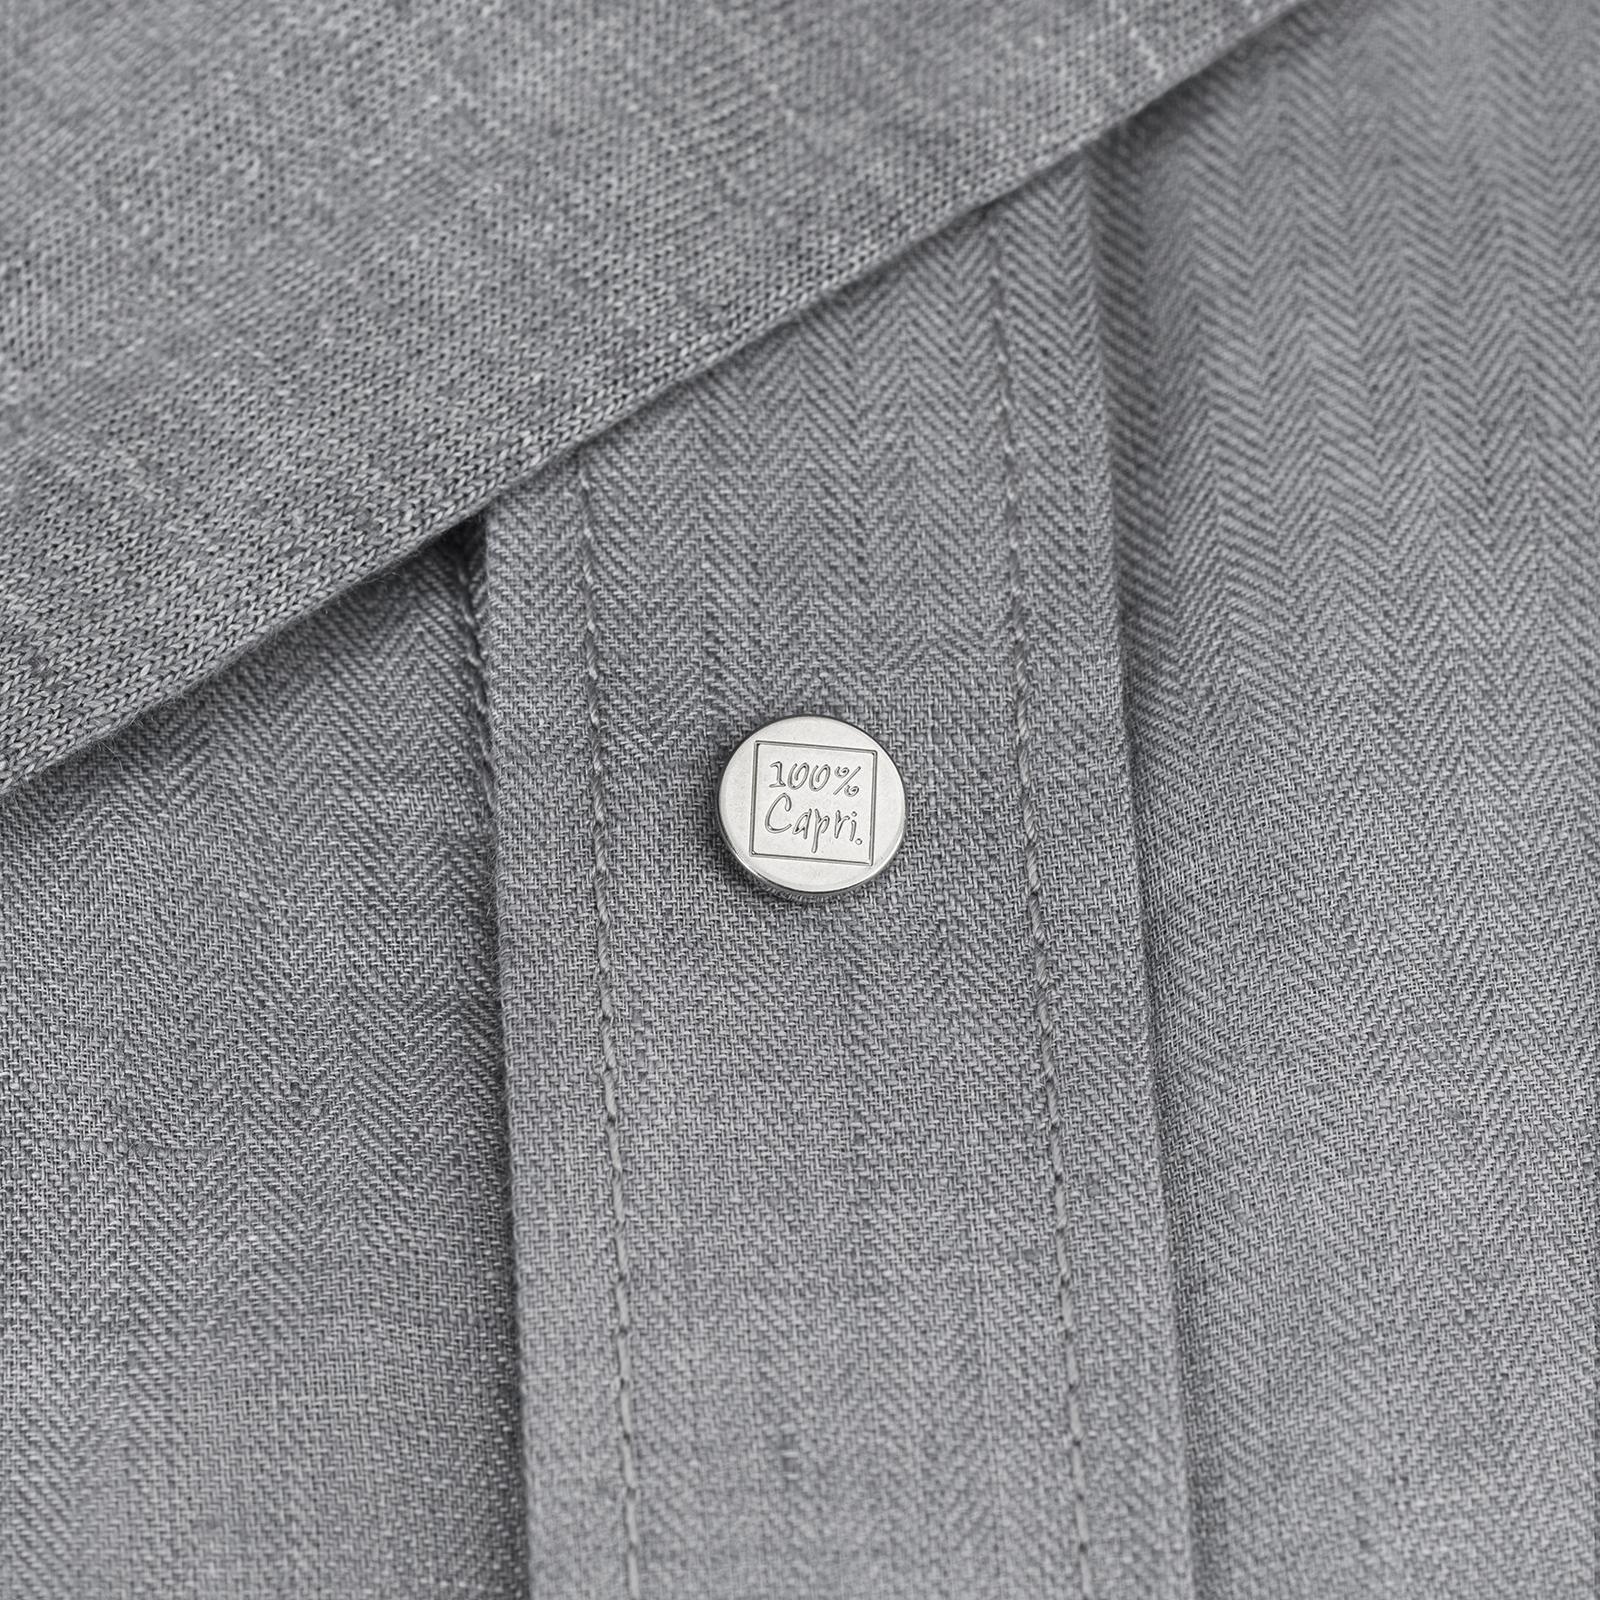 Camicia Cappuccio dark grey 100% Capri